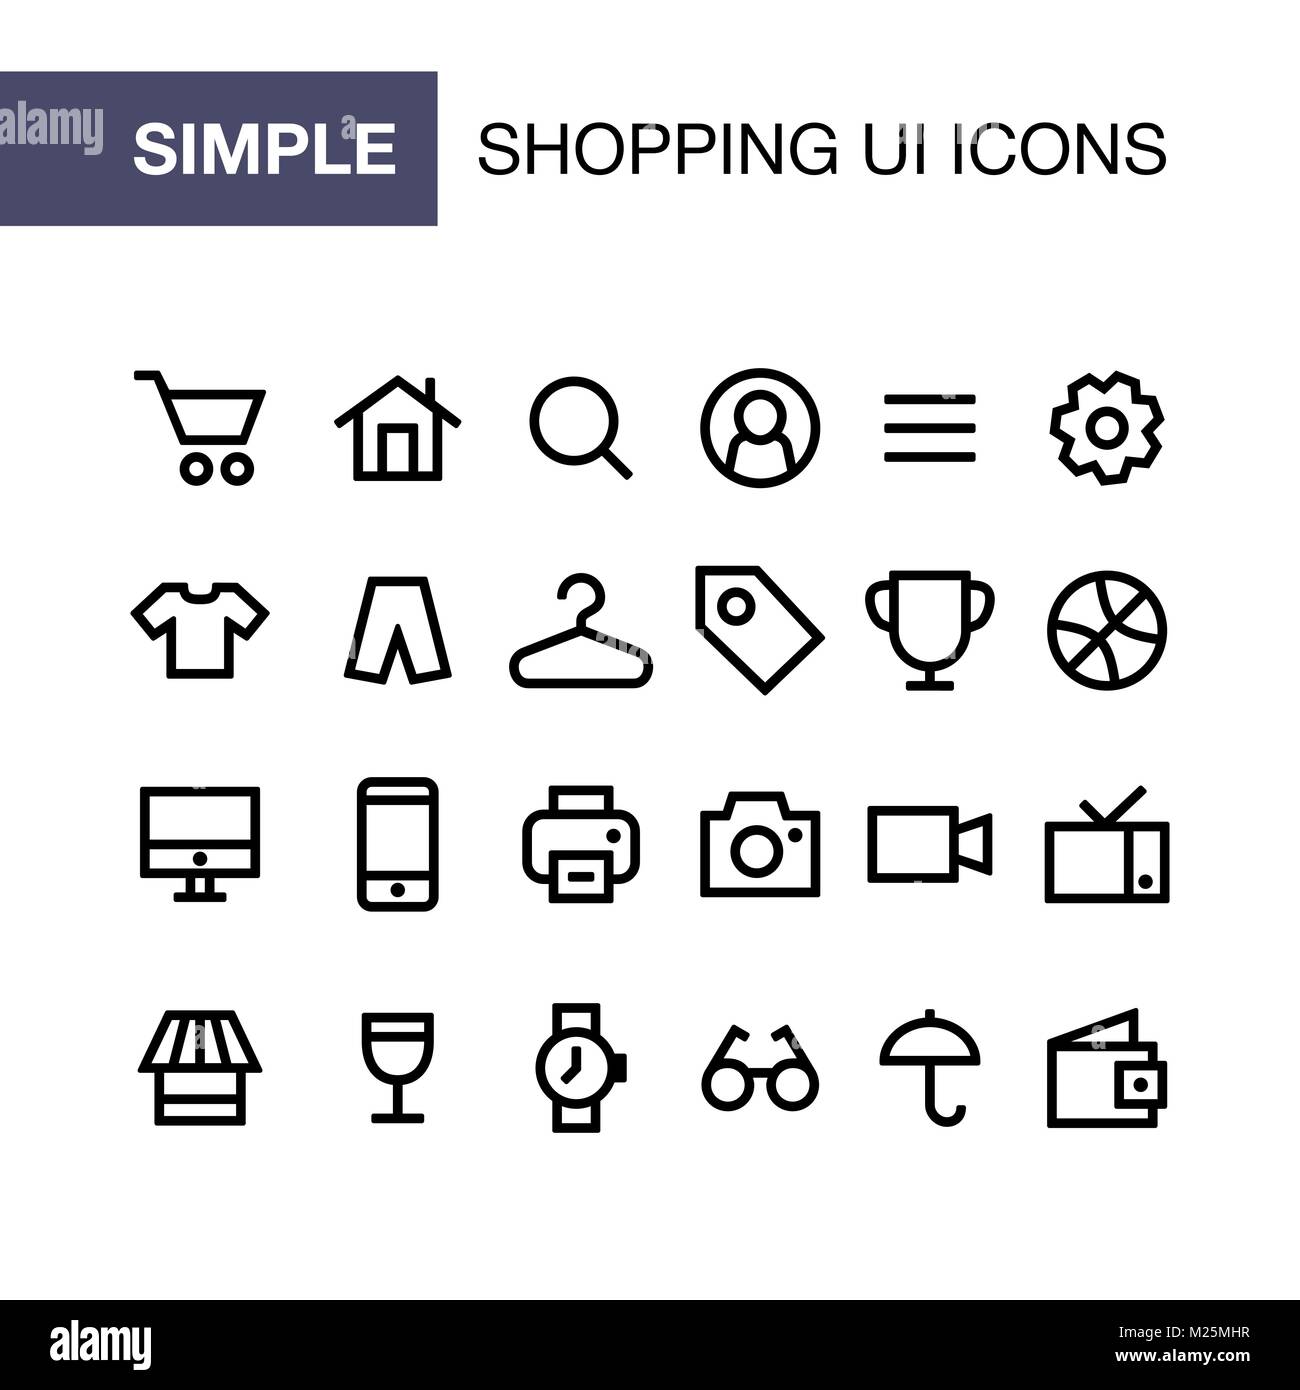 Online shopping Icons für einfache Flat Style ui Design. Stock Vektor